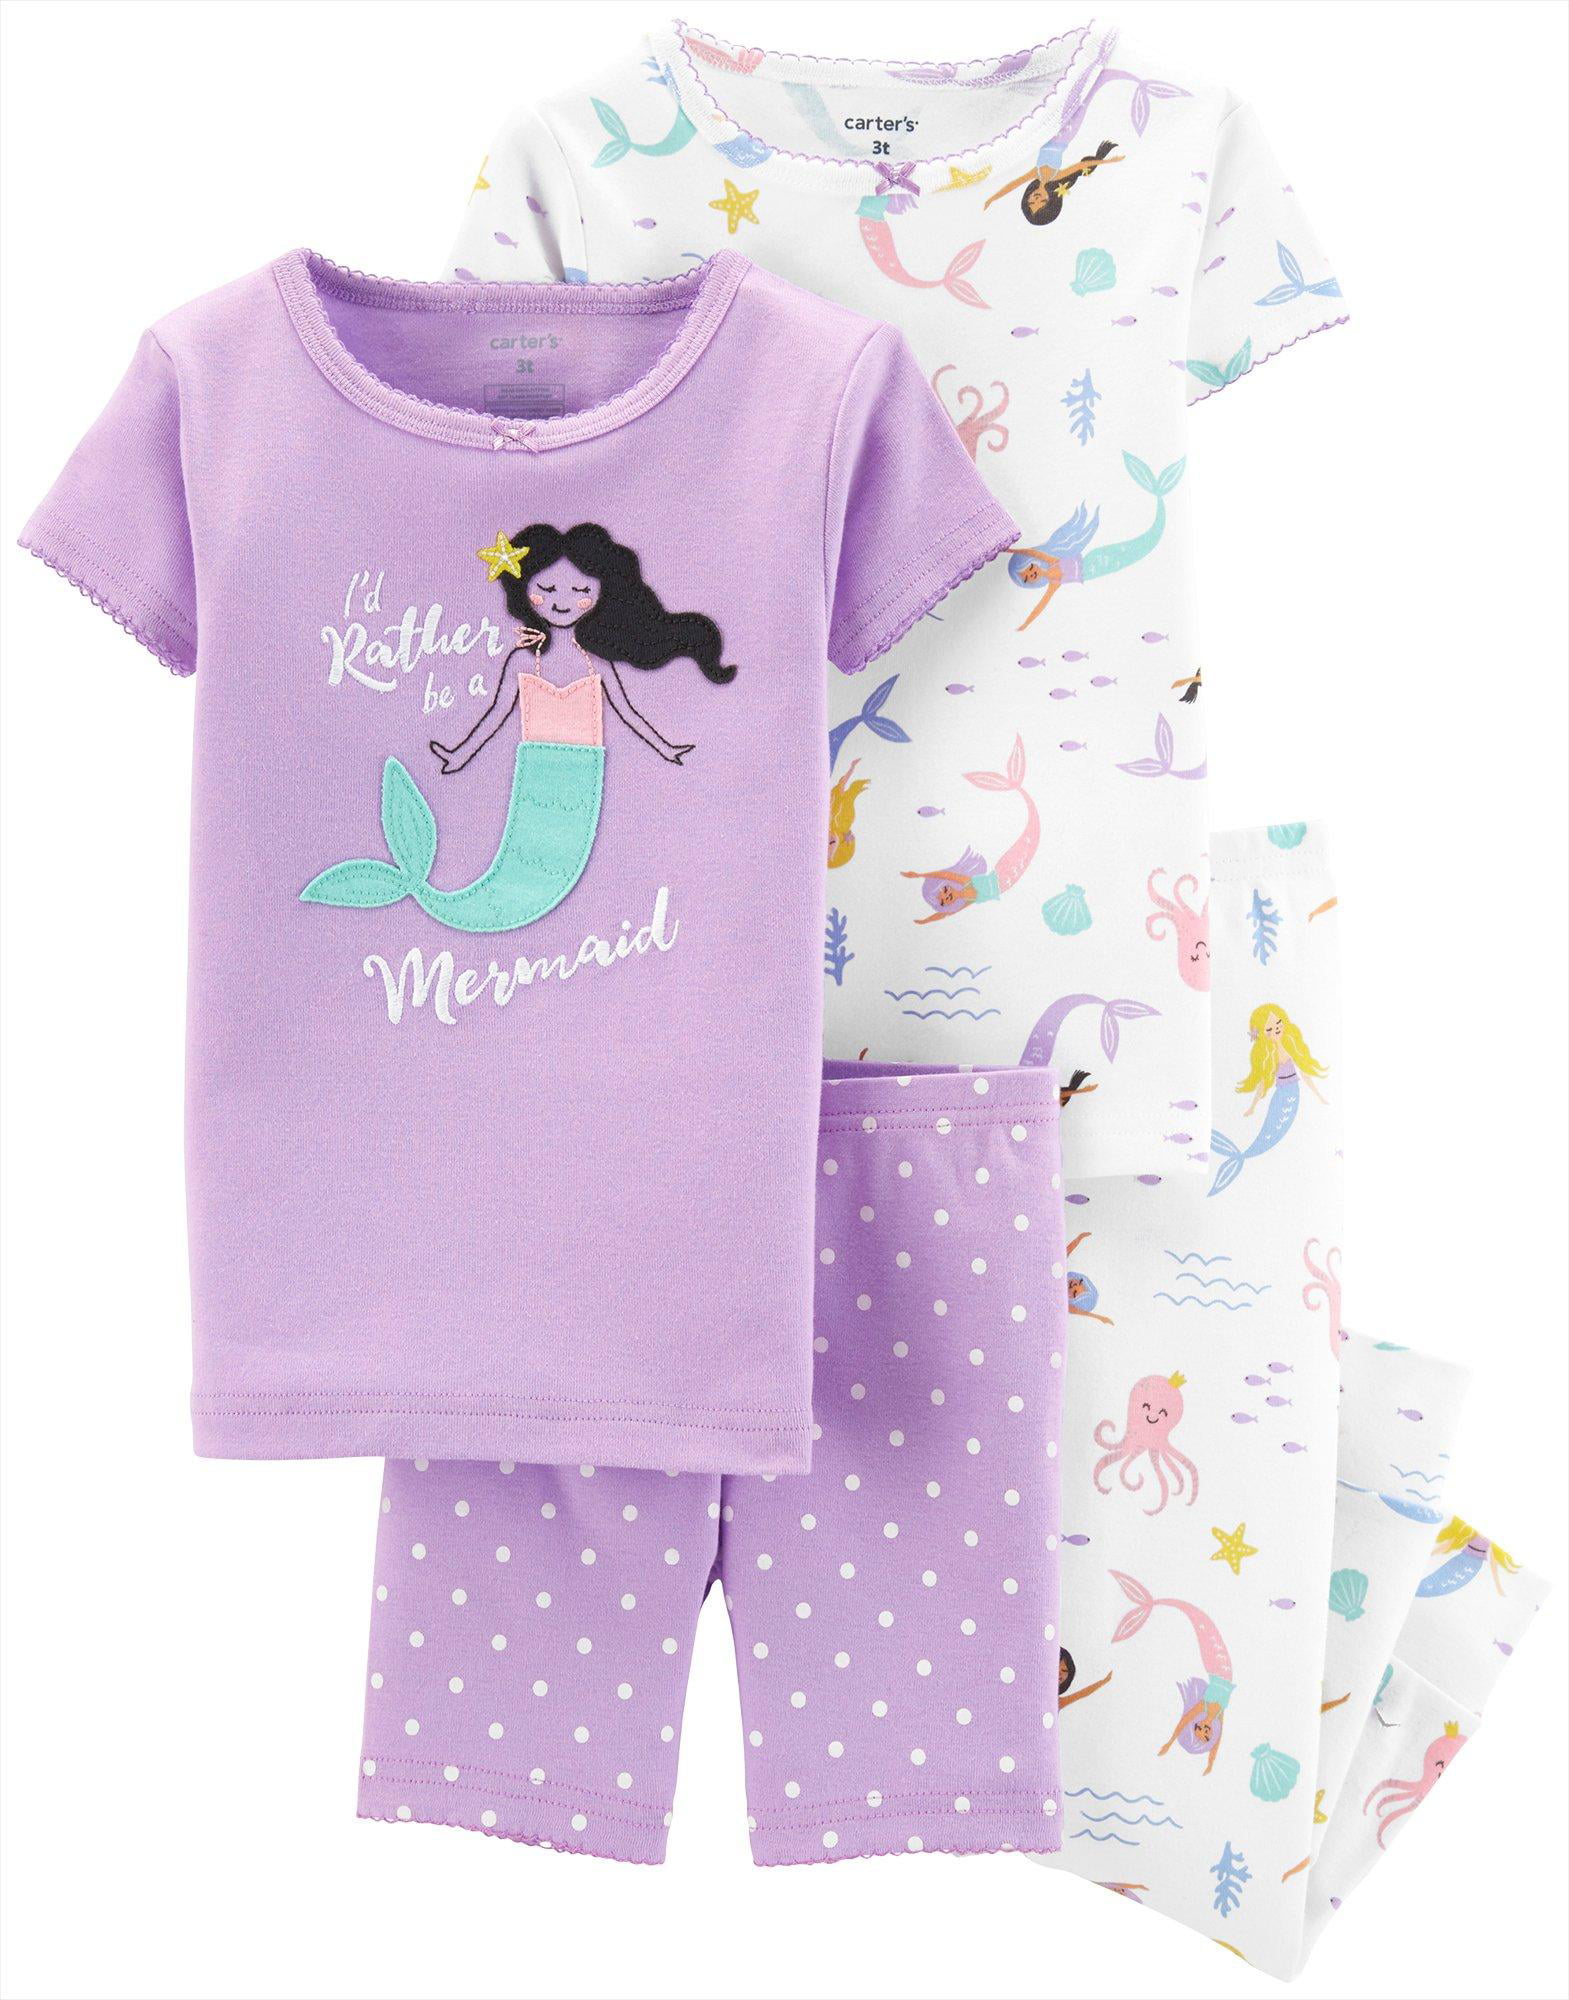 New Carter's Girls Mermaid Pajama Set Blue Toddler